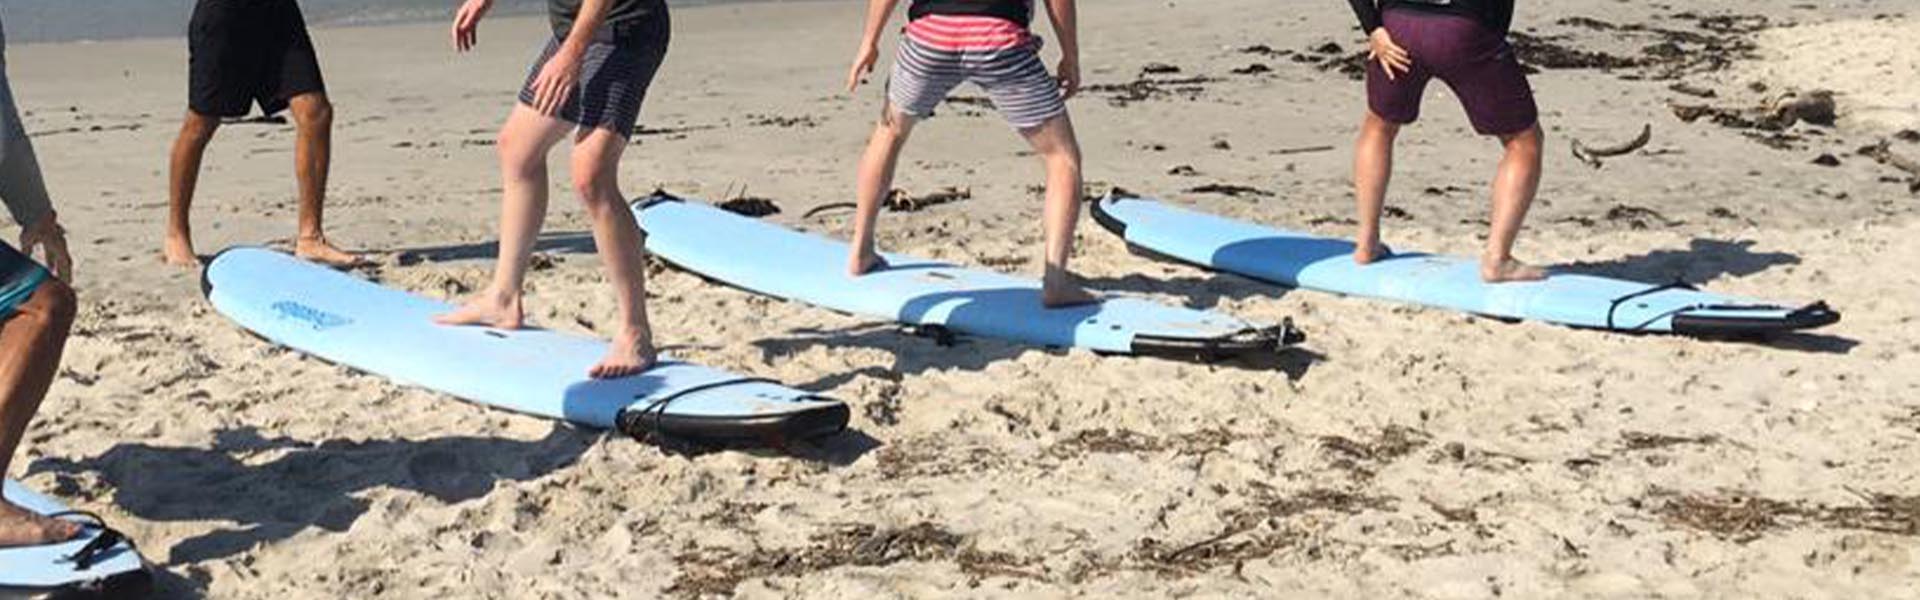 Puerto Vallarta Surf Boards Rentals